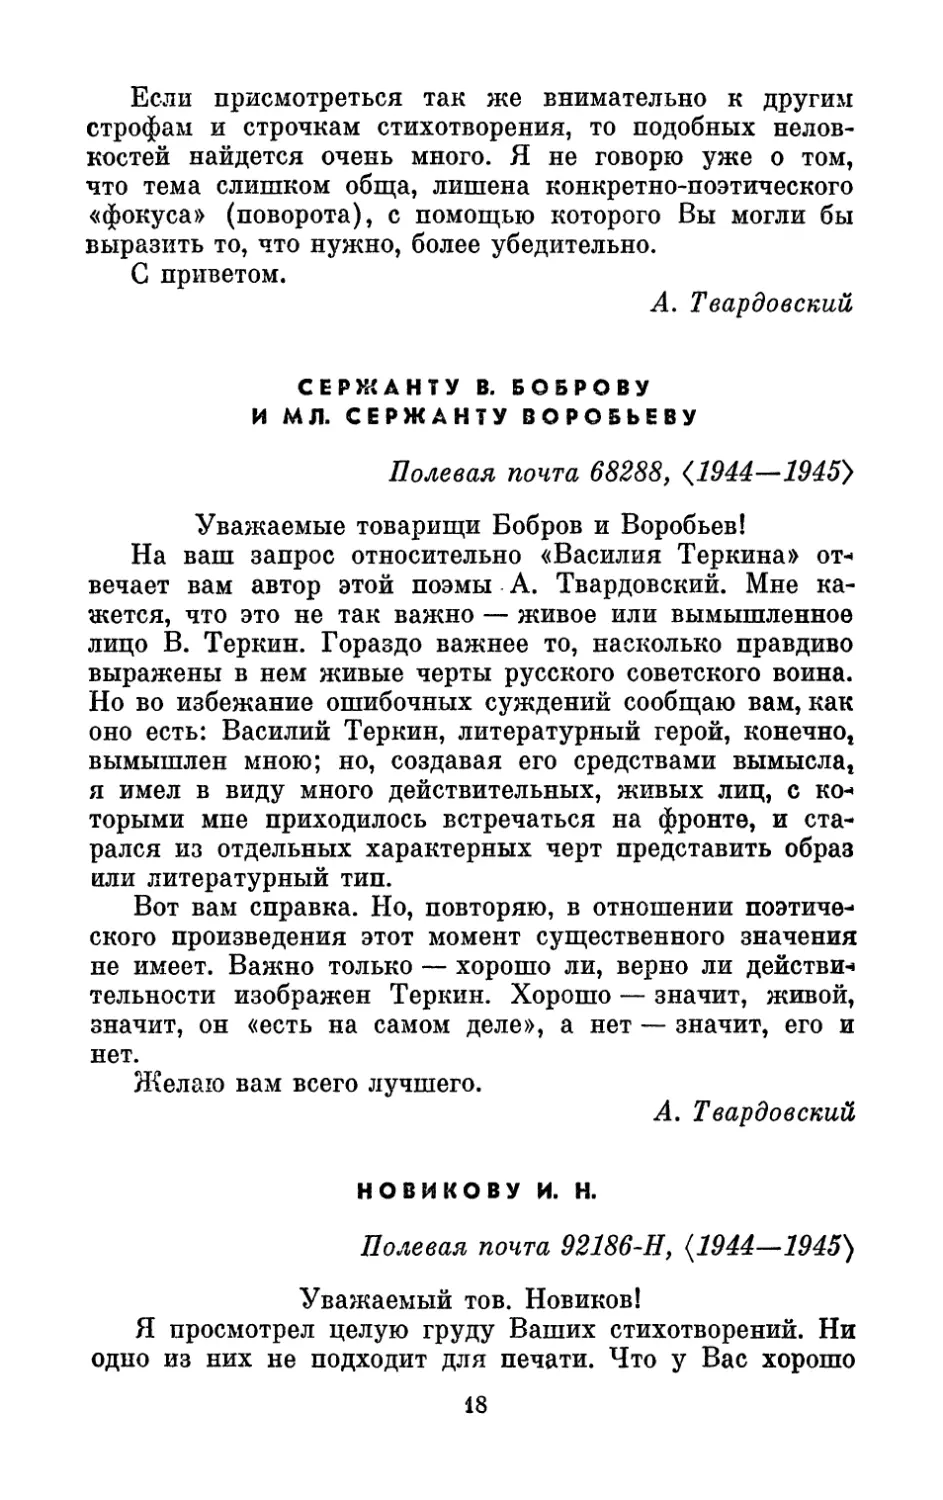 Боброву В. и Воробьеву, <1944–1945 г.>
Новикову И. Н., <1944– 1945 г.>